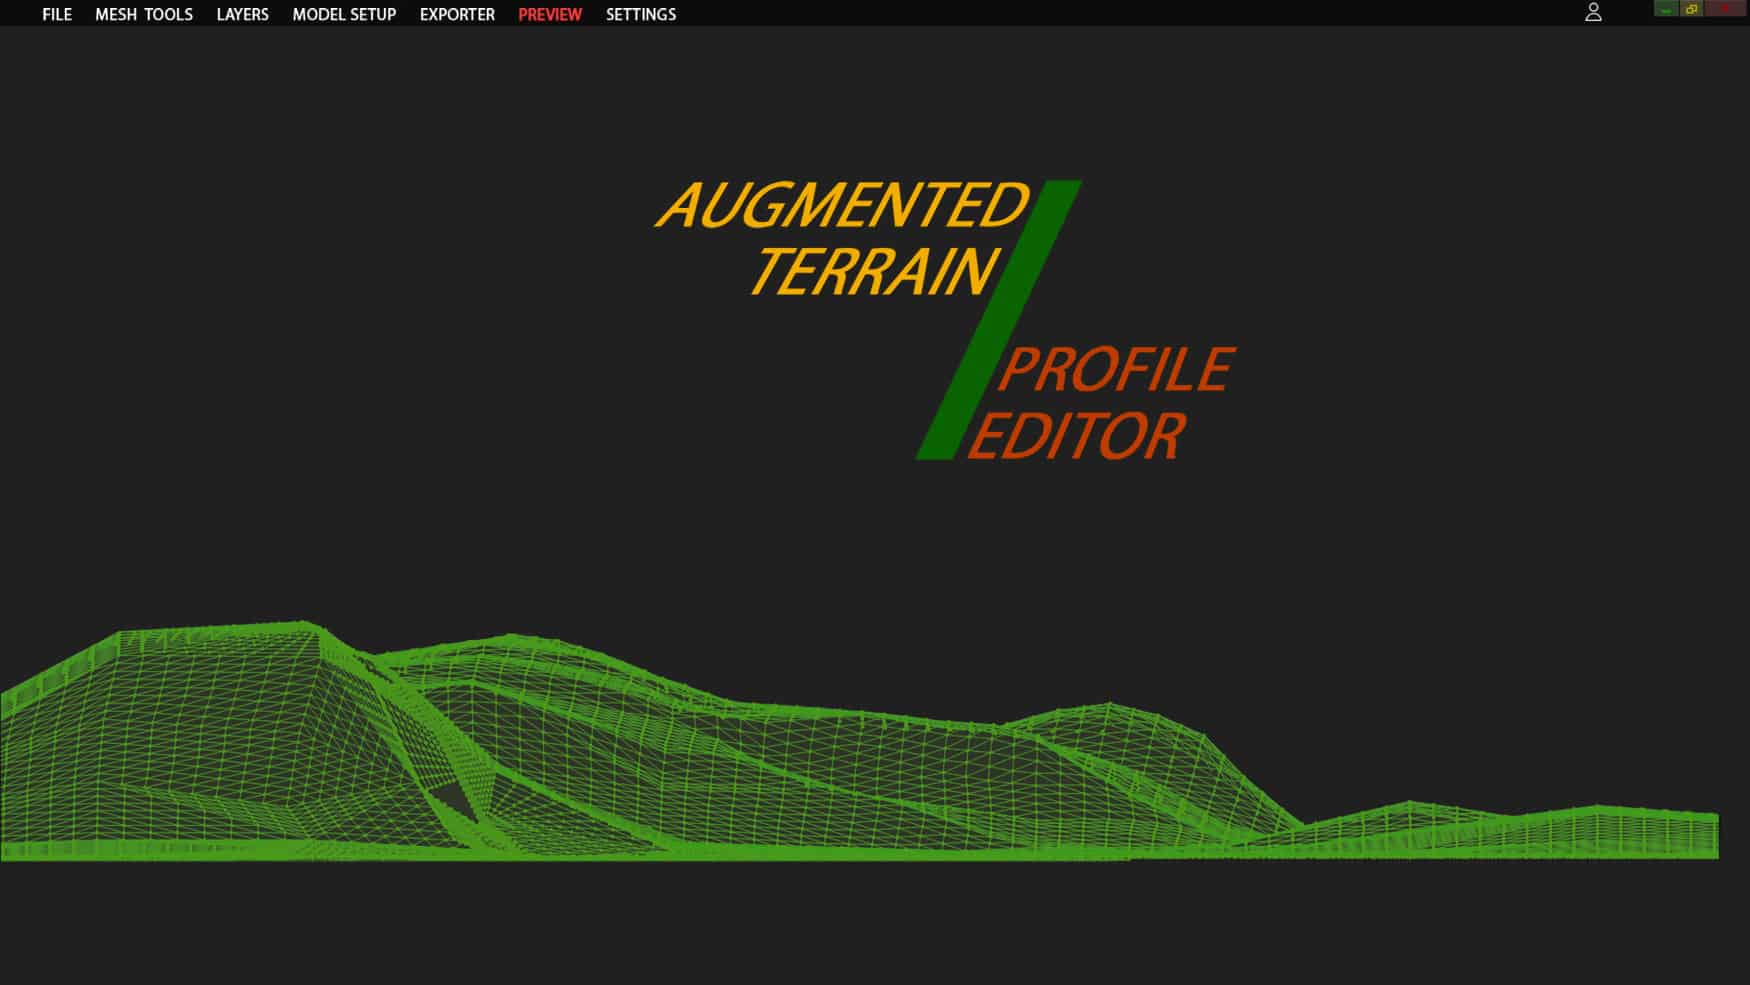 Aviotek Simulations Releases Augmented Terrain Profile Editor for X-Plane 11 - Aviotek Simulation Software